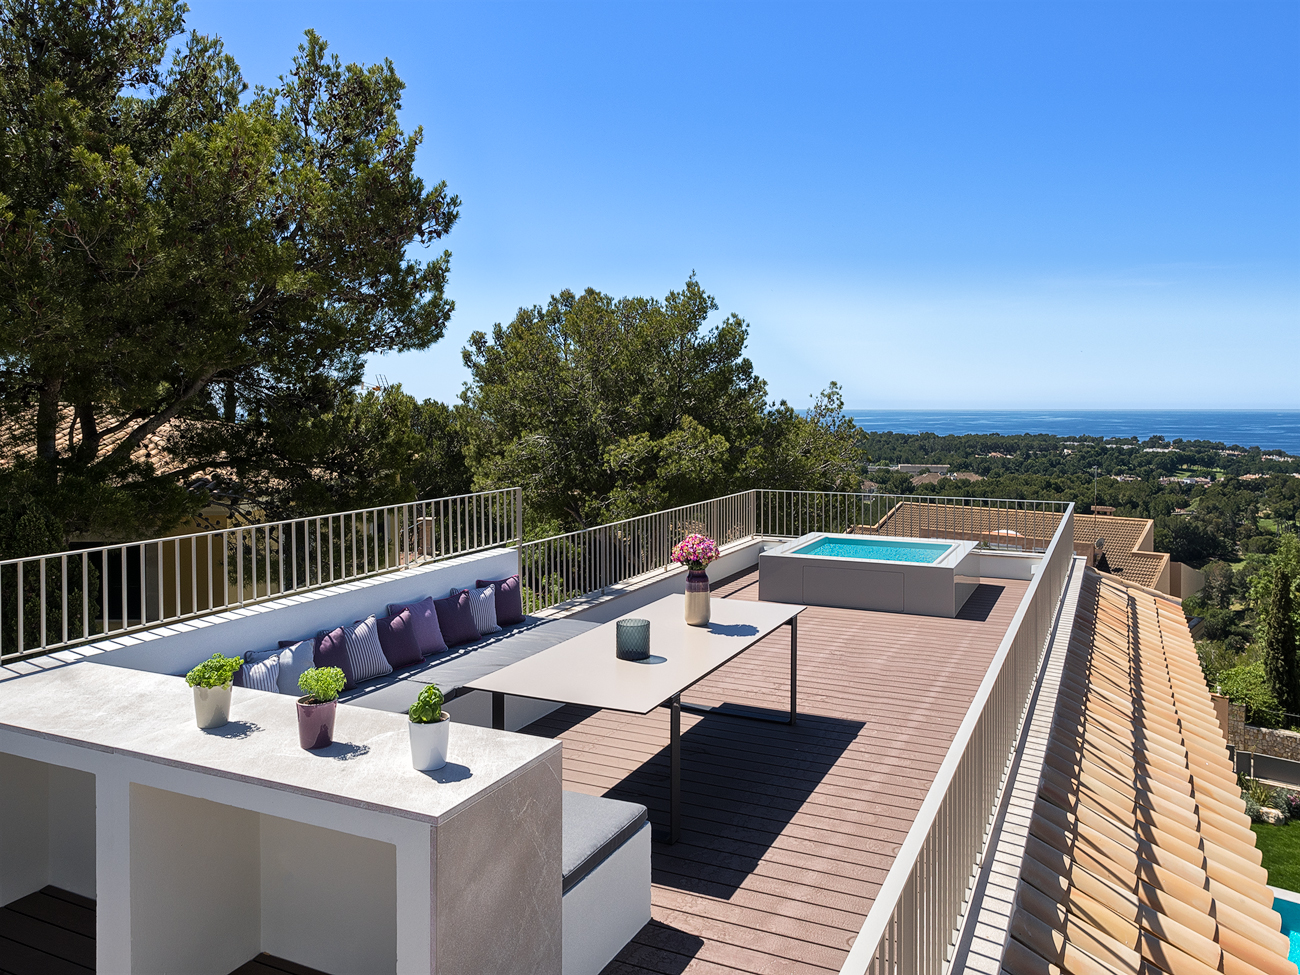 Bendinat på Mallorca – Lavin-Estates på Mallorca